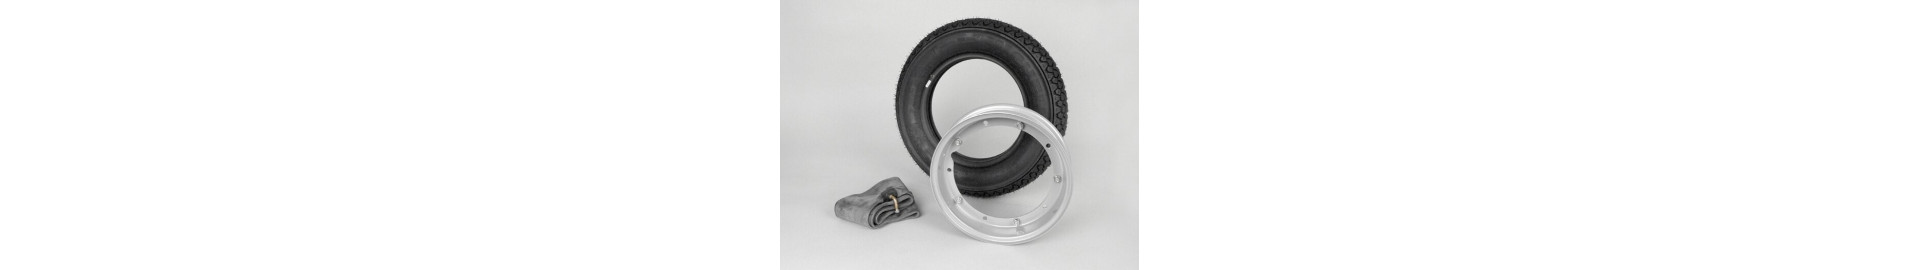 Ruedas para moto Vespa | Comprar neumáticos para tu Vespa